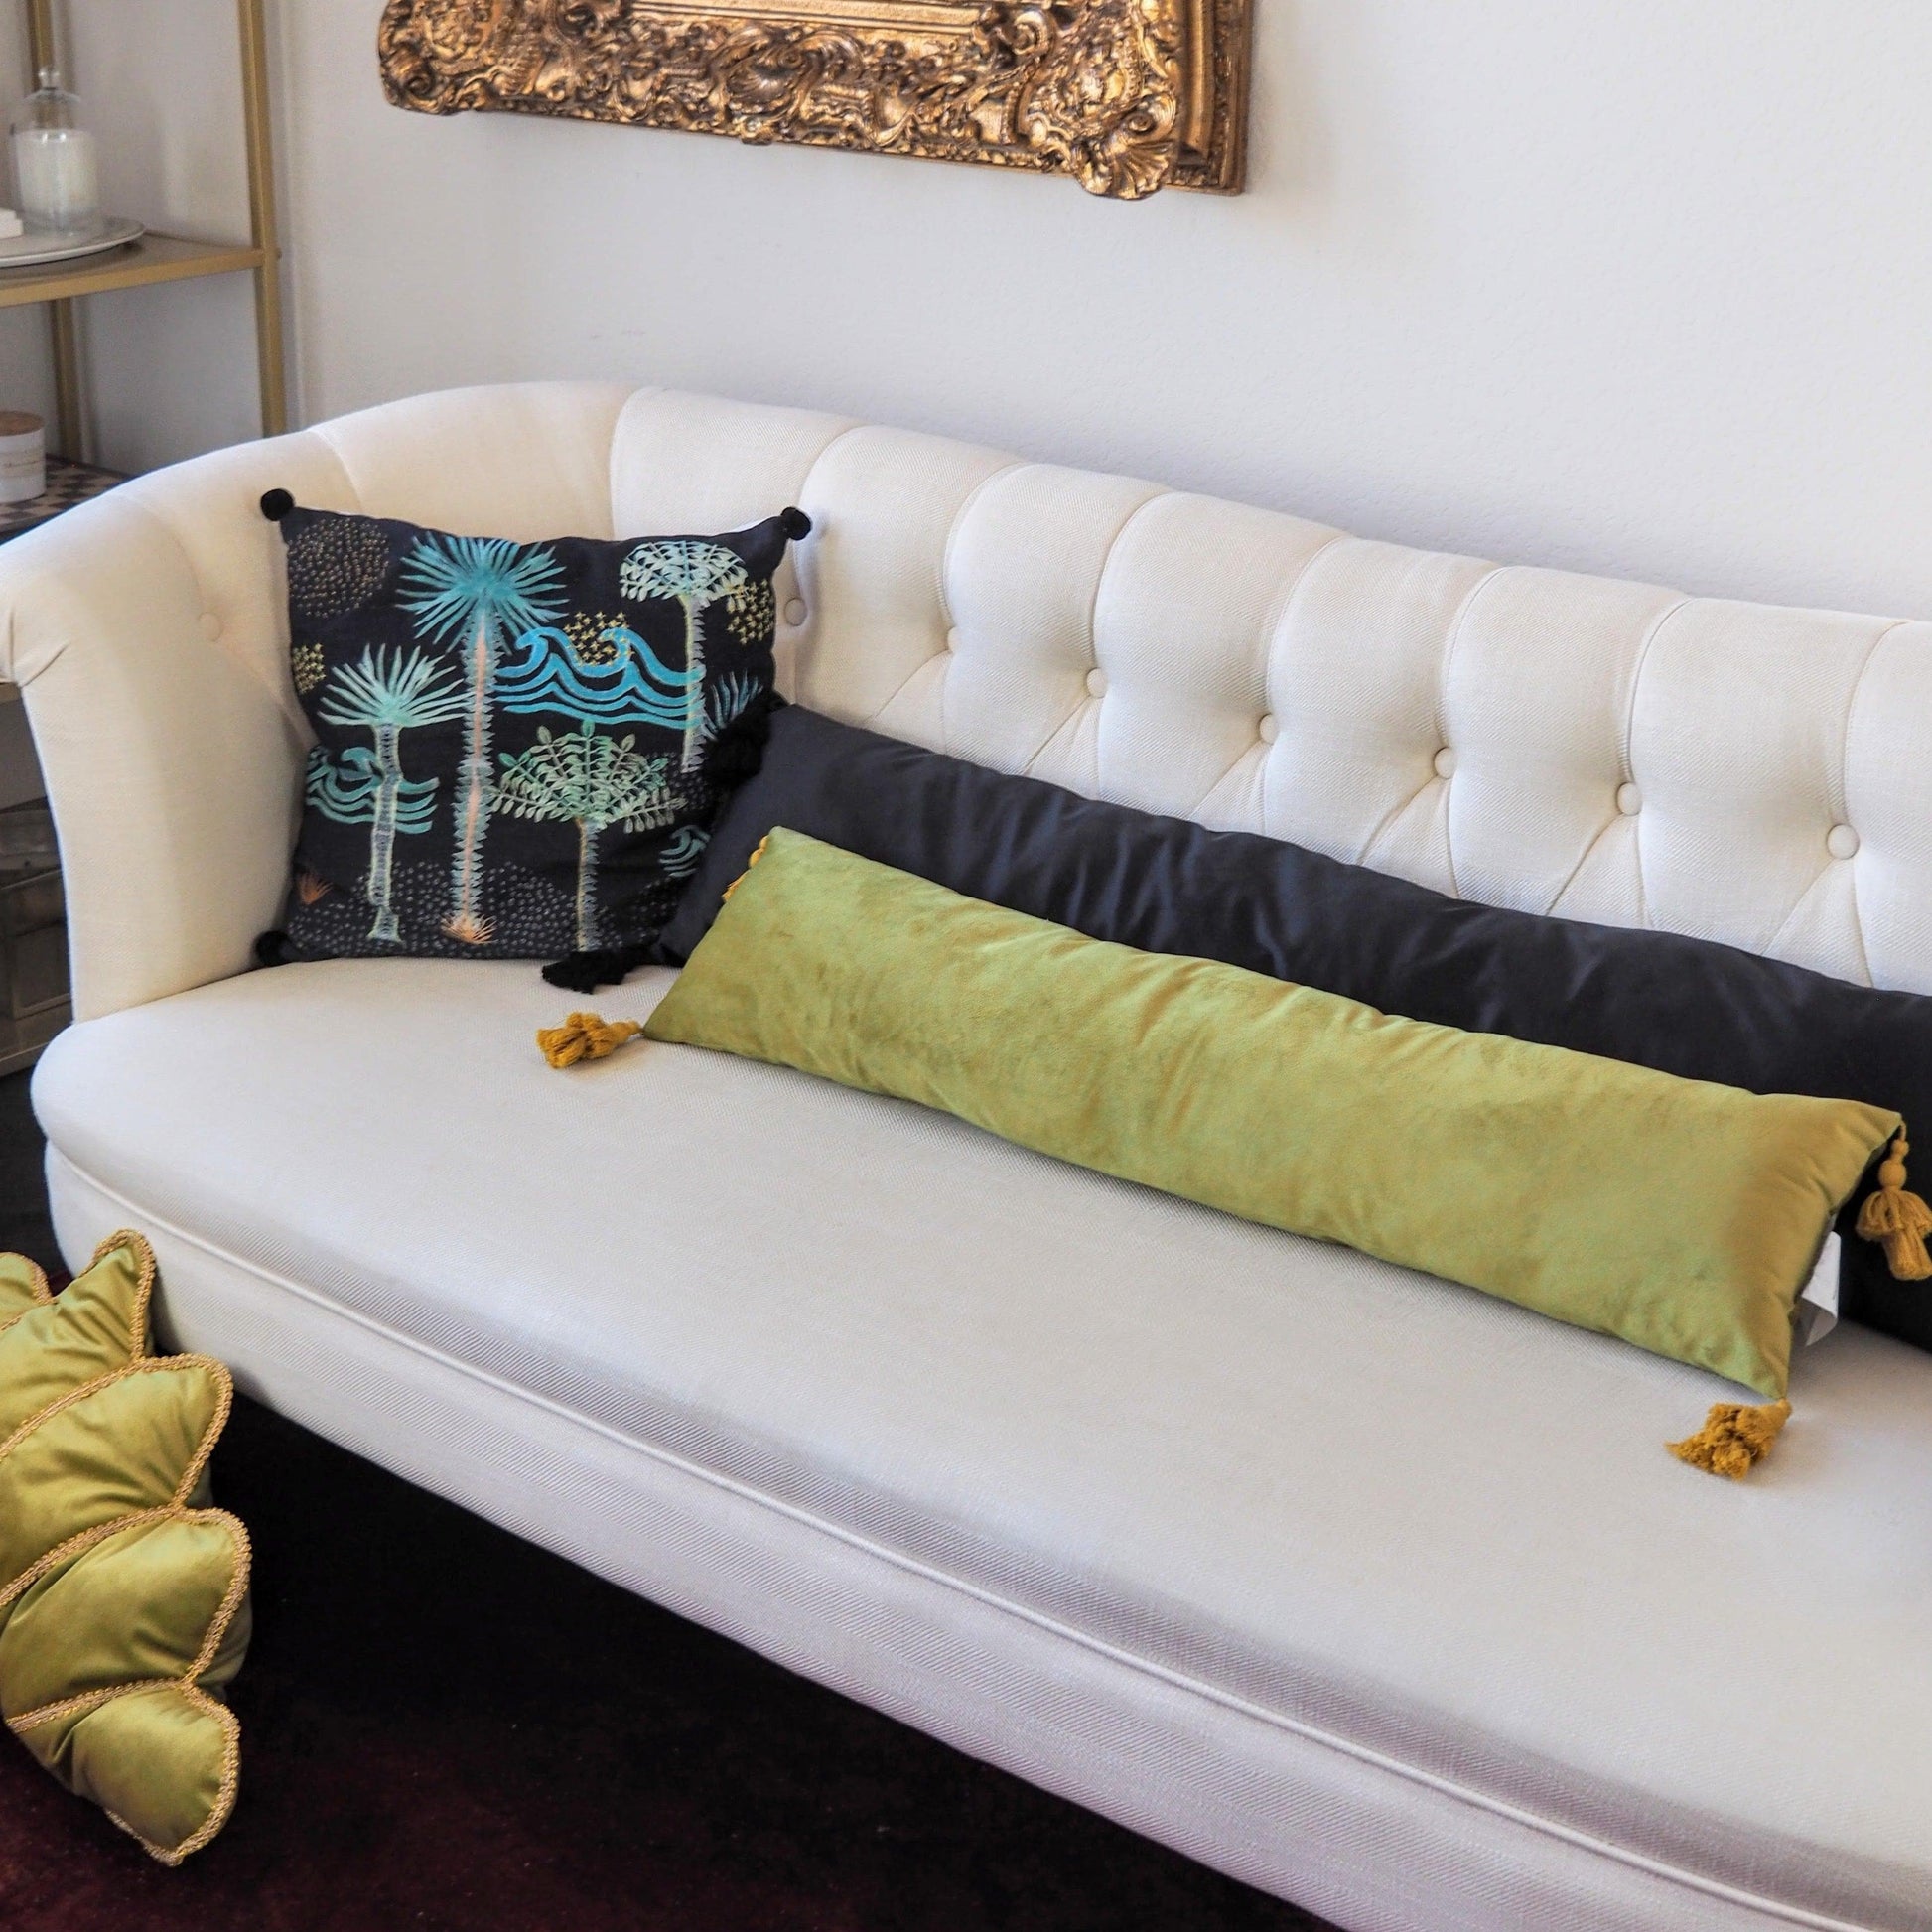 Golden Velvet Extra Skinny Long Lumbar Pillow with Tassels 